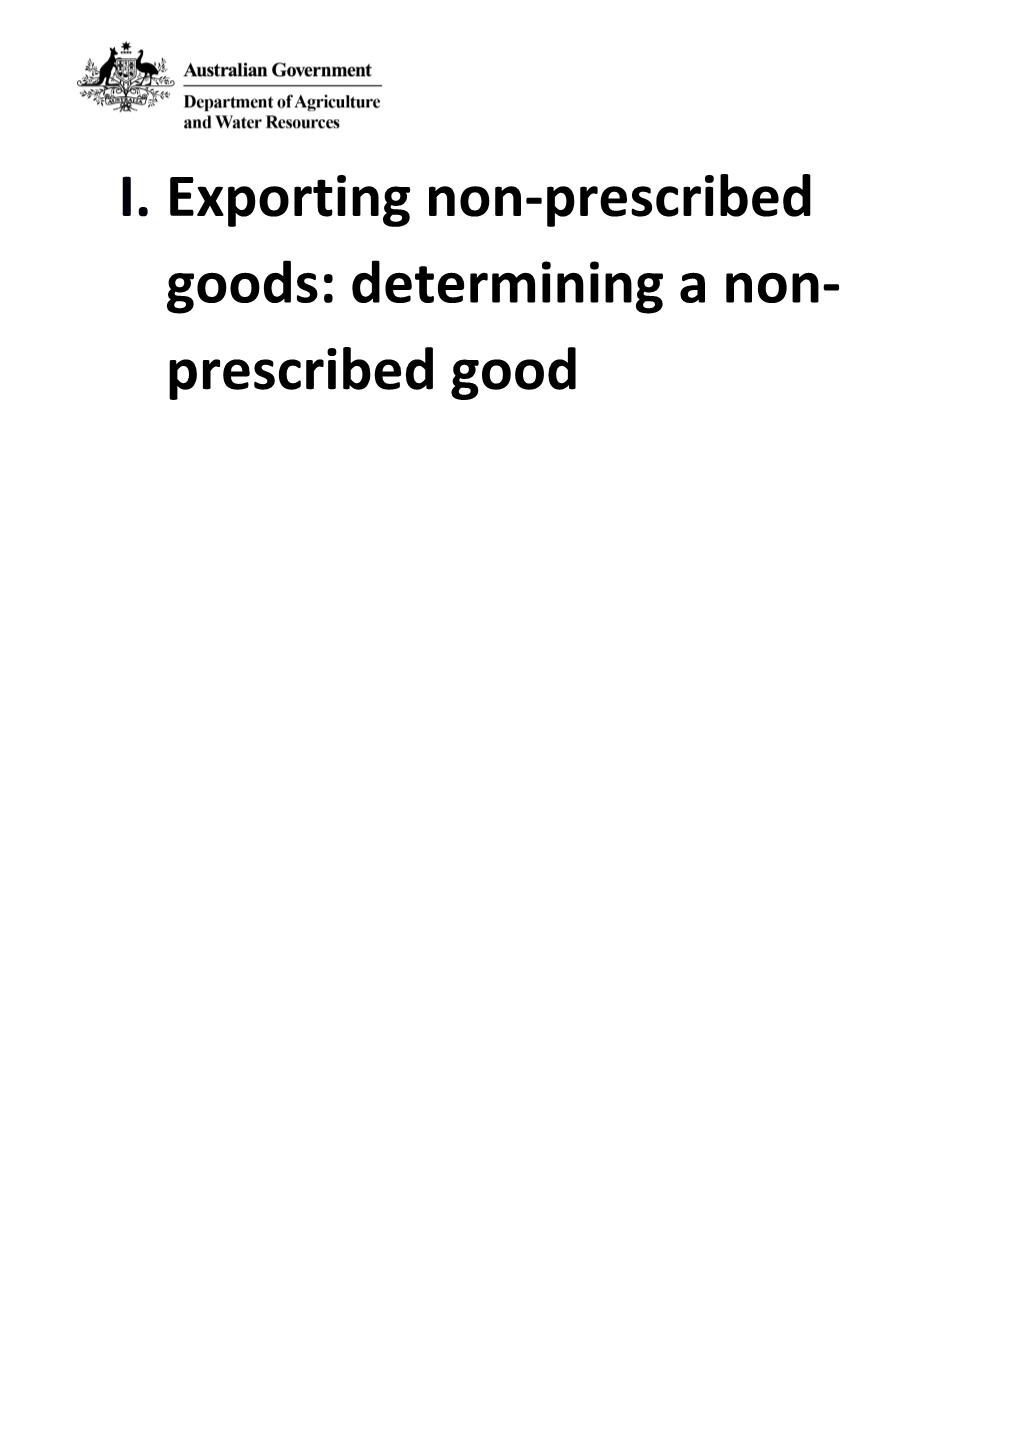 Exporting Non-Prescribed Goods: Determining a Non-Prescribed Good